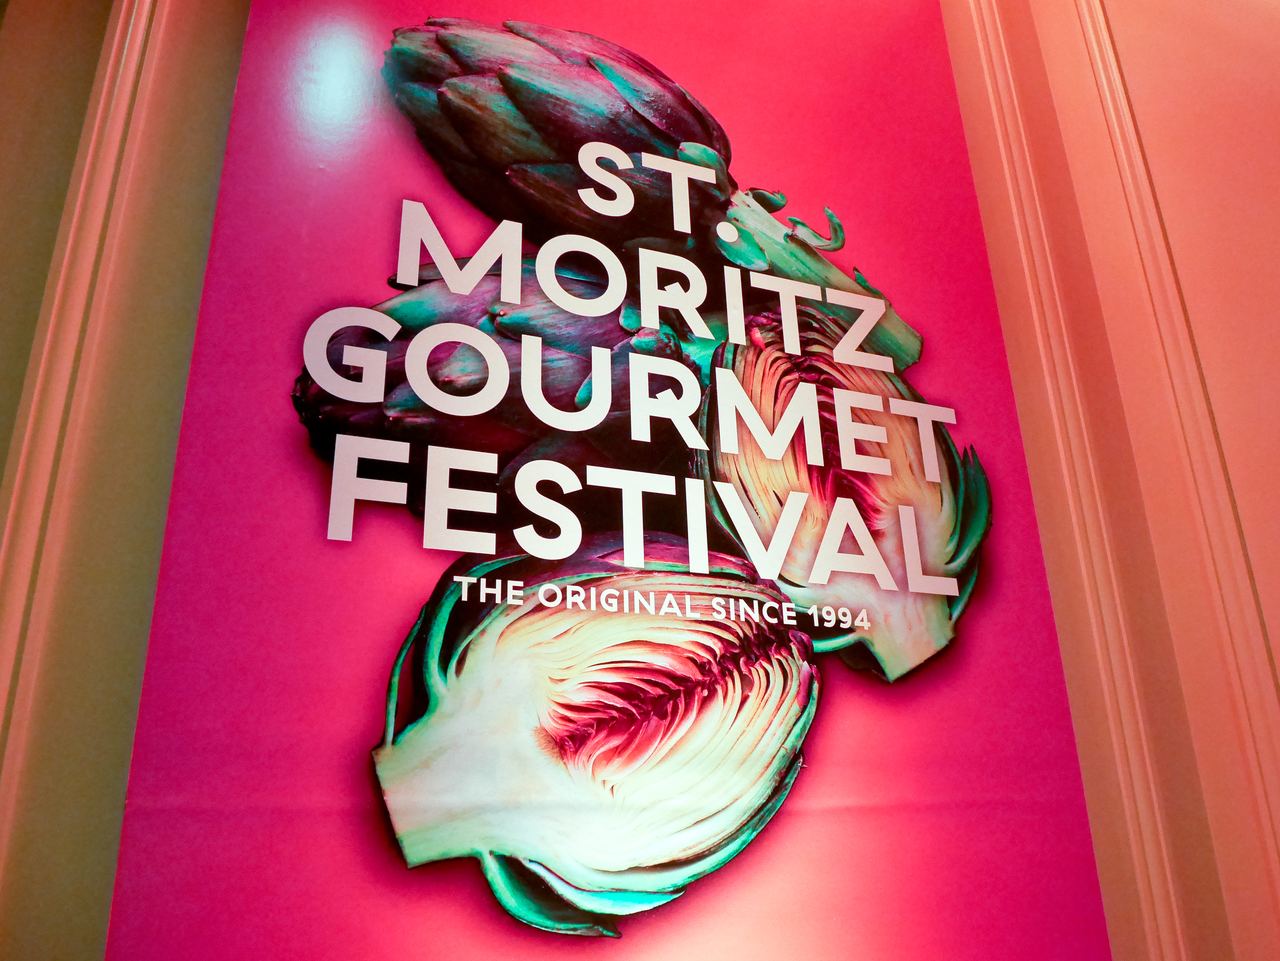 St Moritz Gourmet Festival